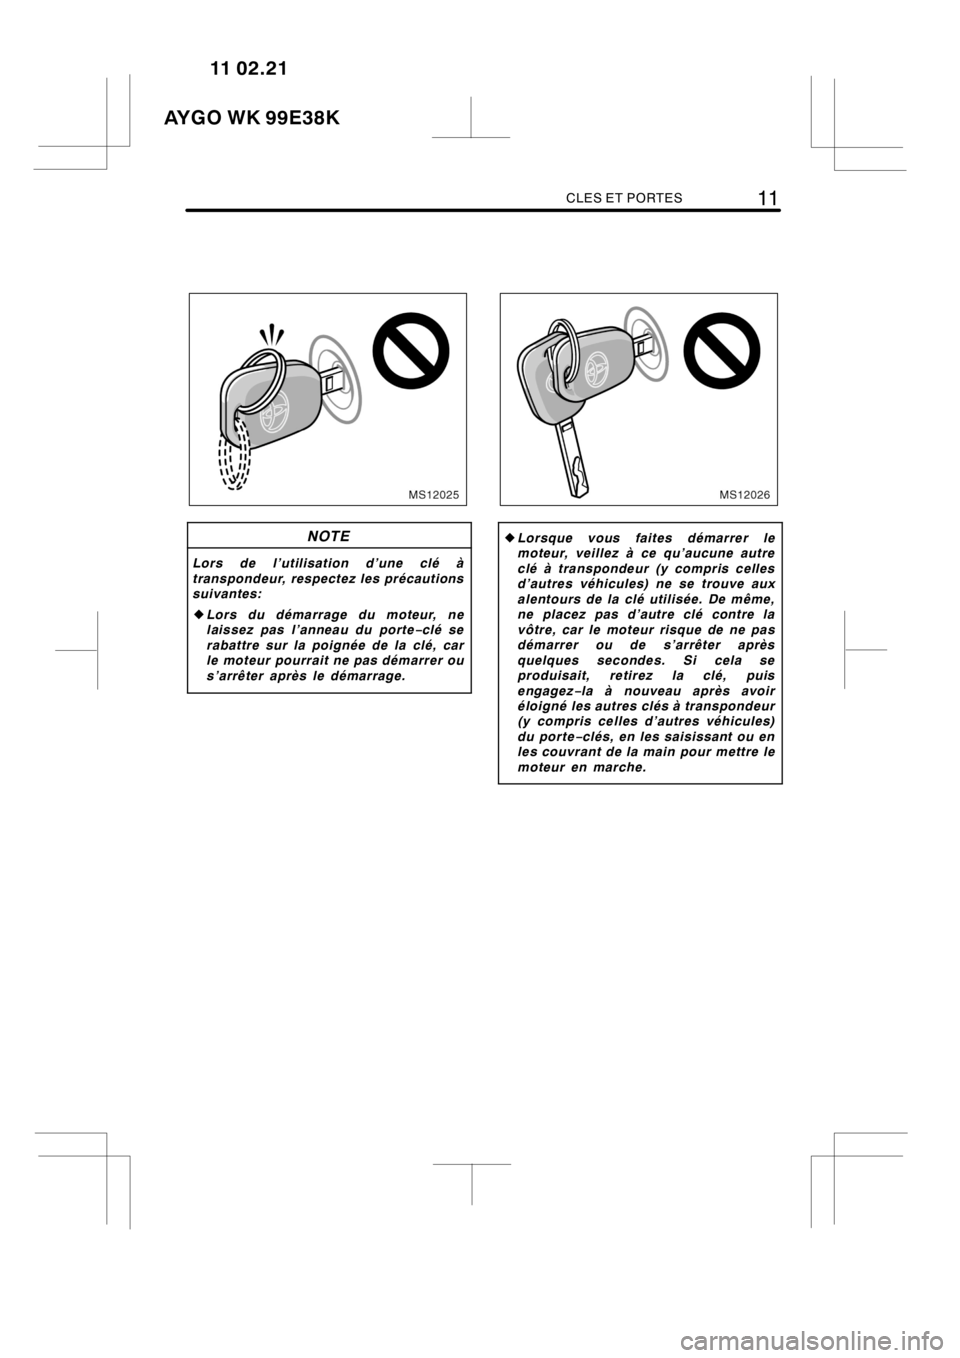 TOYOTA AYGO 2012  Notices Demploi (in French) CLES ET PORTES11
MS12025
NOTE
Lors de l’utilisation d’une clé à
transpondeur, respectez les précautions
suivantes:
zLors du démarrage du moteur, ne
laissez pas l’anneau du porte−clé se
ra